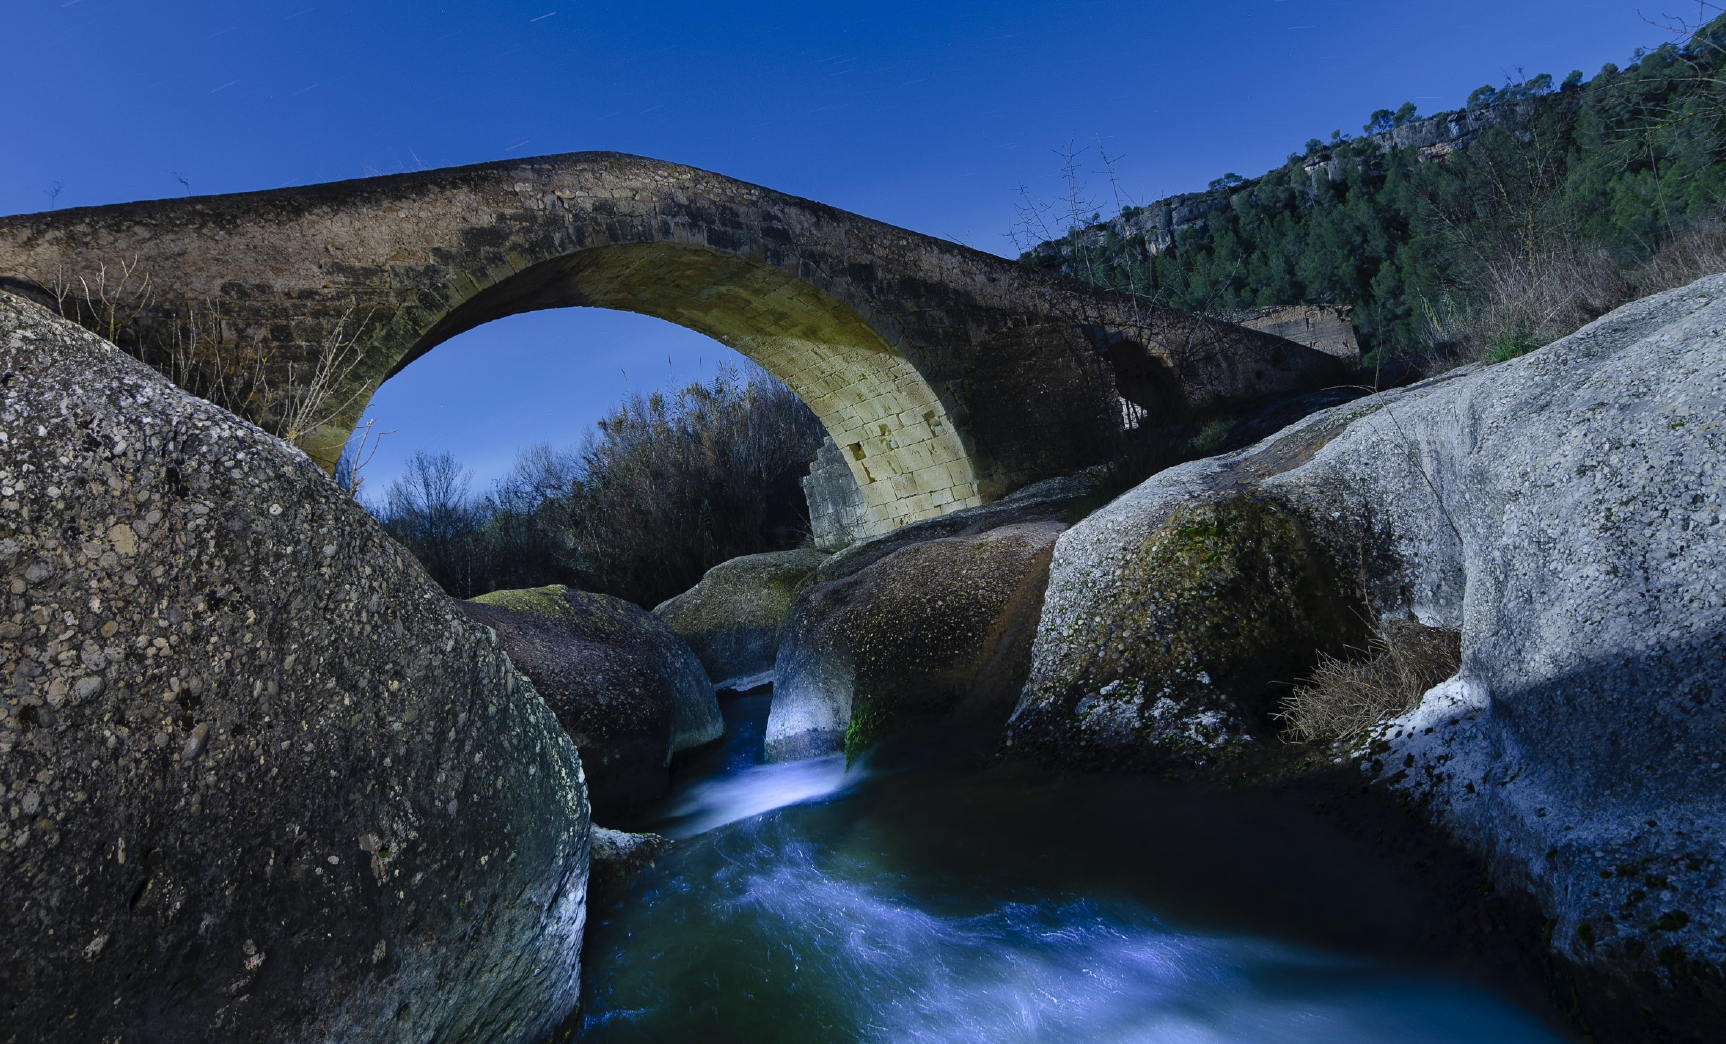 Una exposició fotogràfica al Parc Natural del Montsant redescobreix el monumental Pont Vell de Cabacés